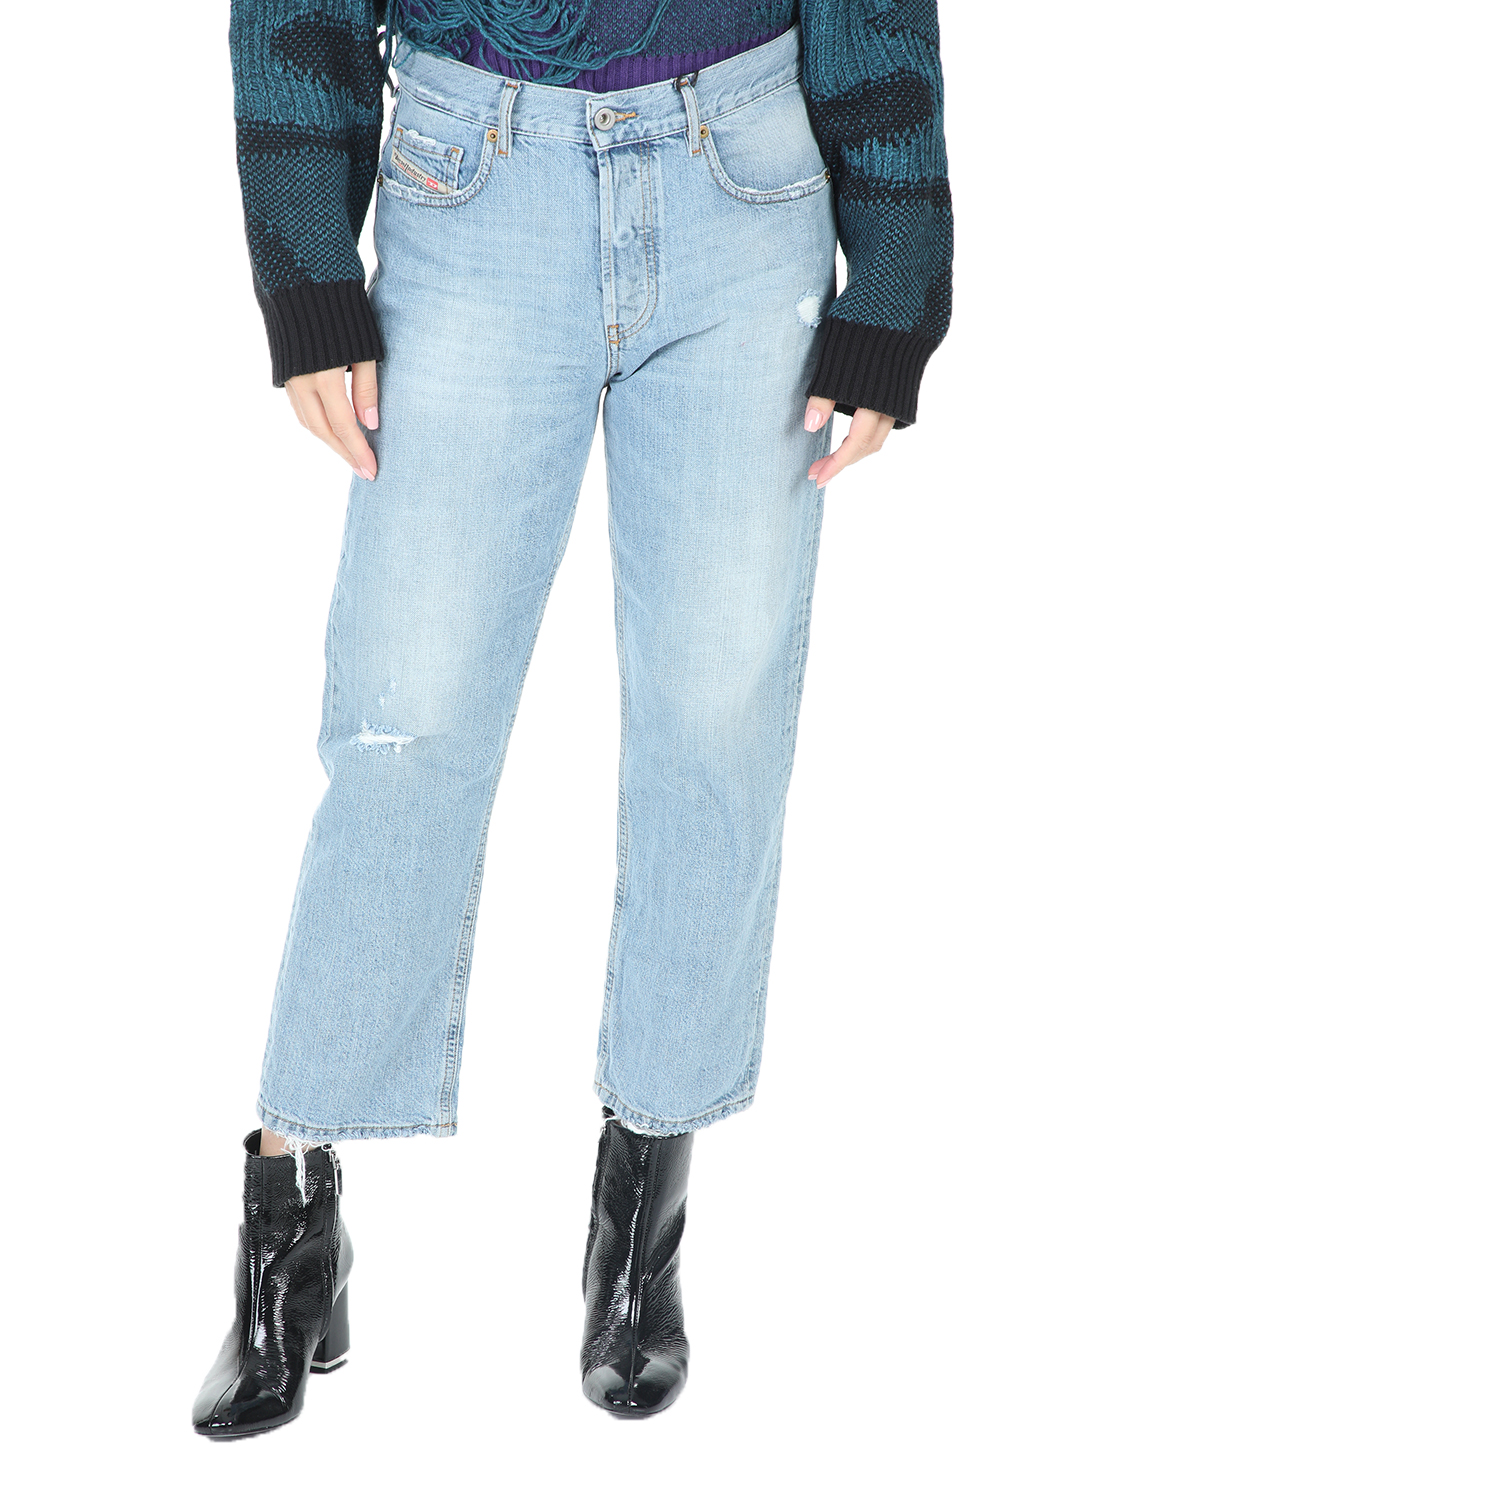 Γυναικεία/Ρούχα/Τζίν/Boyfriend DIESEL - Γυναικείο cropped jean παντελόνι DIESEL ARYEL L.32 μπλε